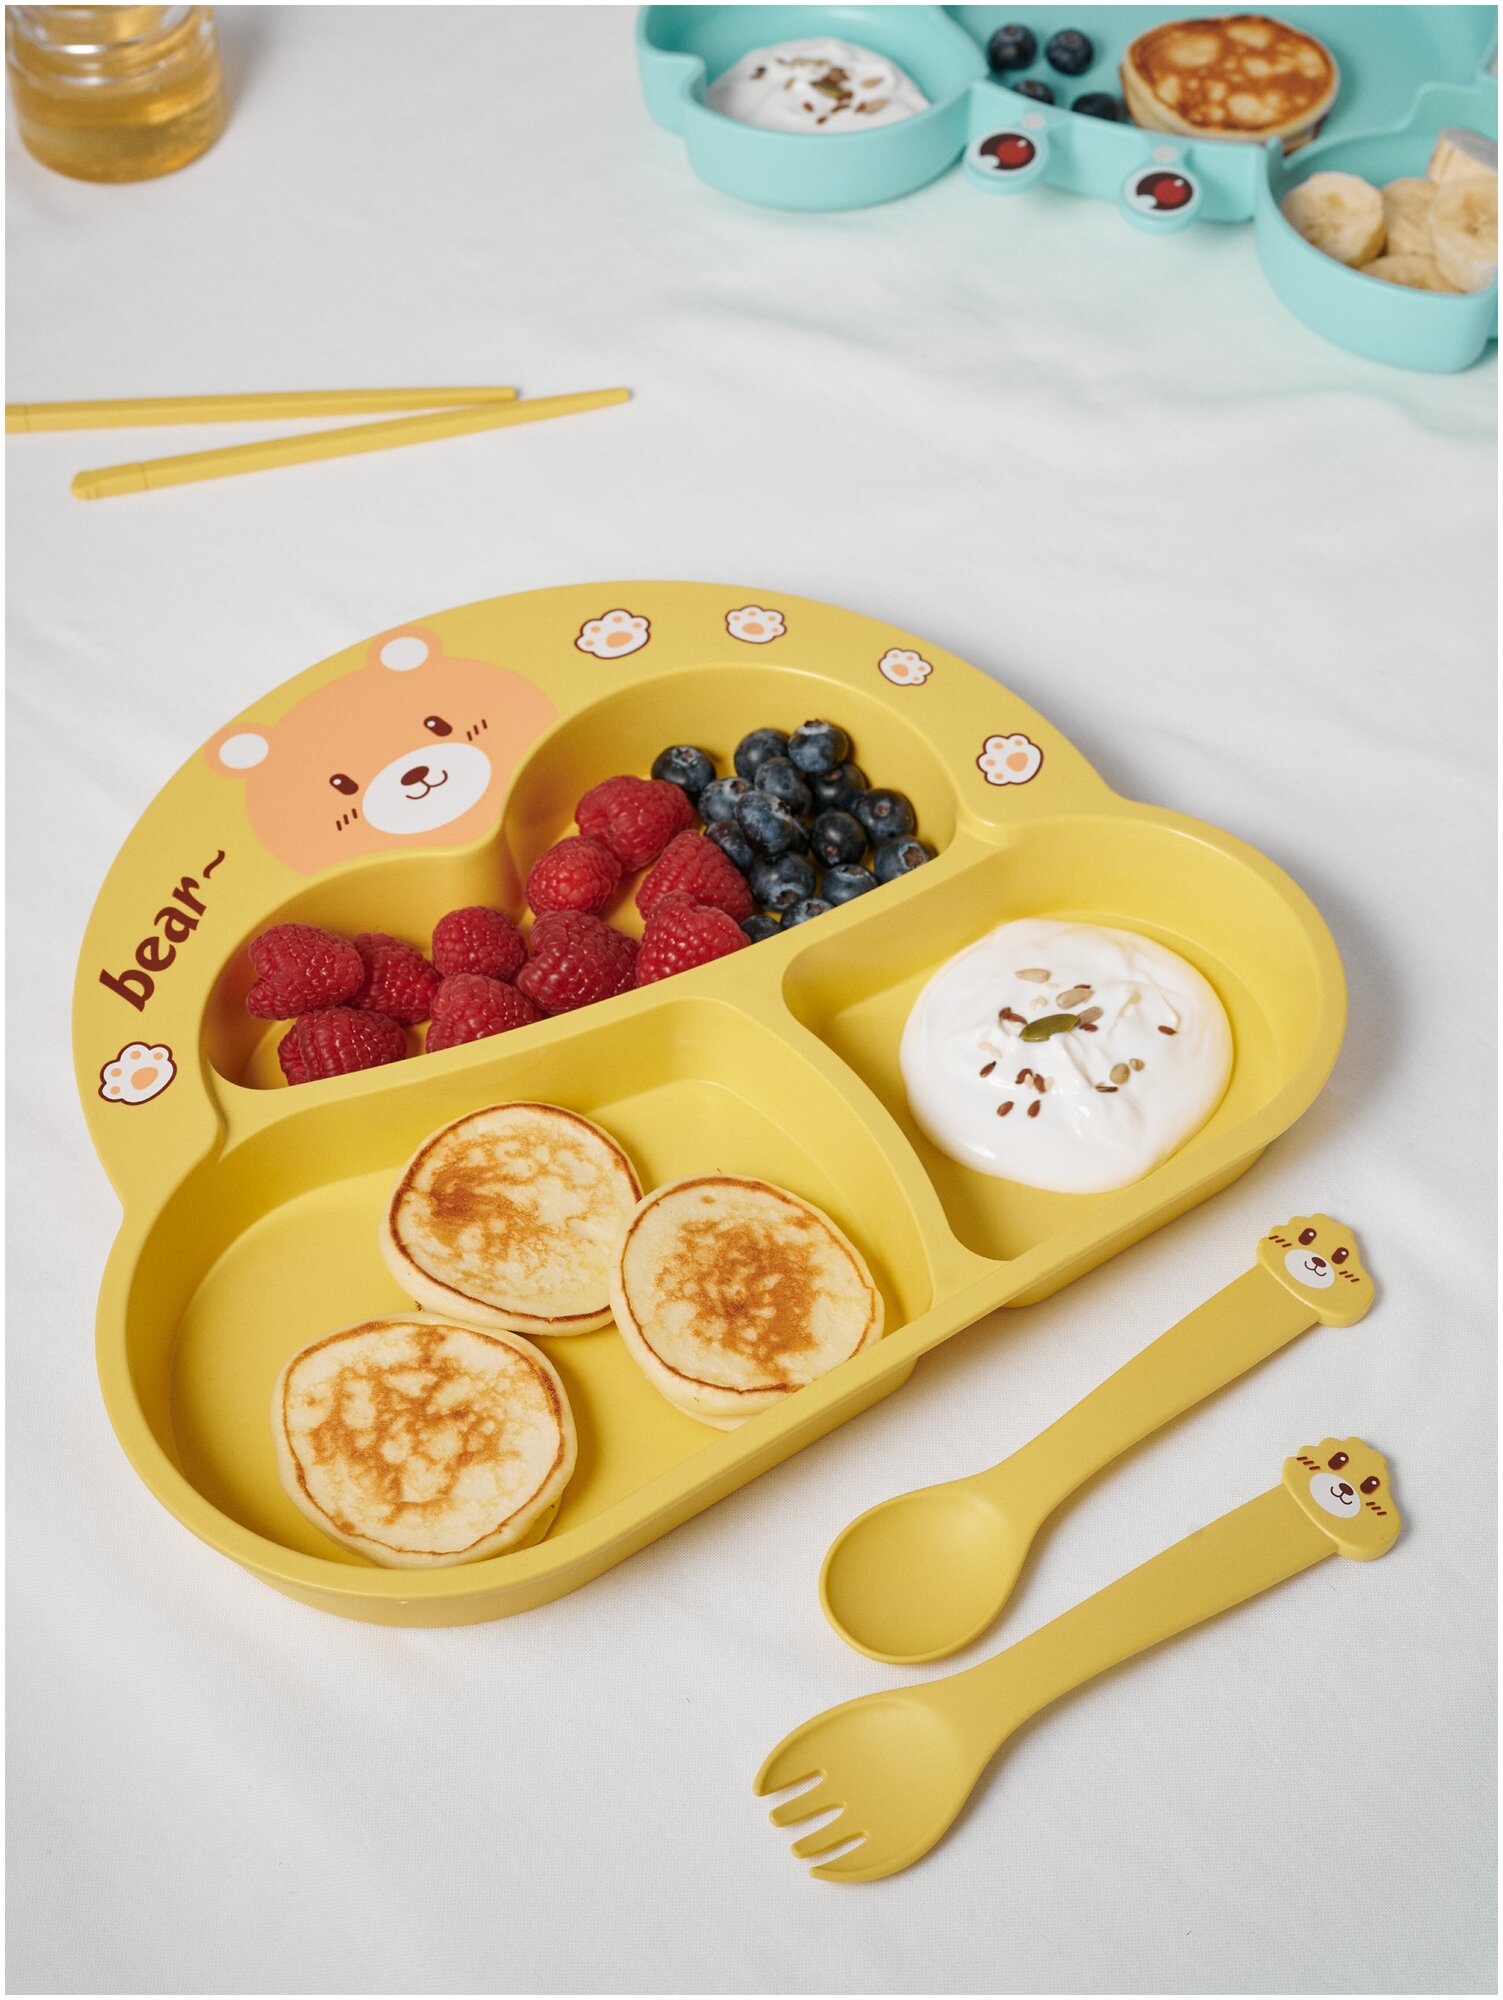 Детская посуда для кормления набор Медвежонок детская тарелка, ложка, вилка, желтая